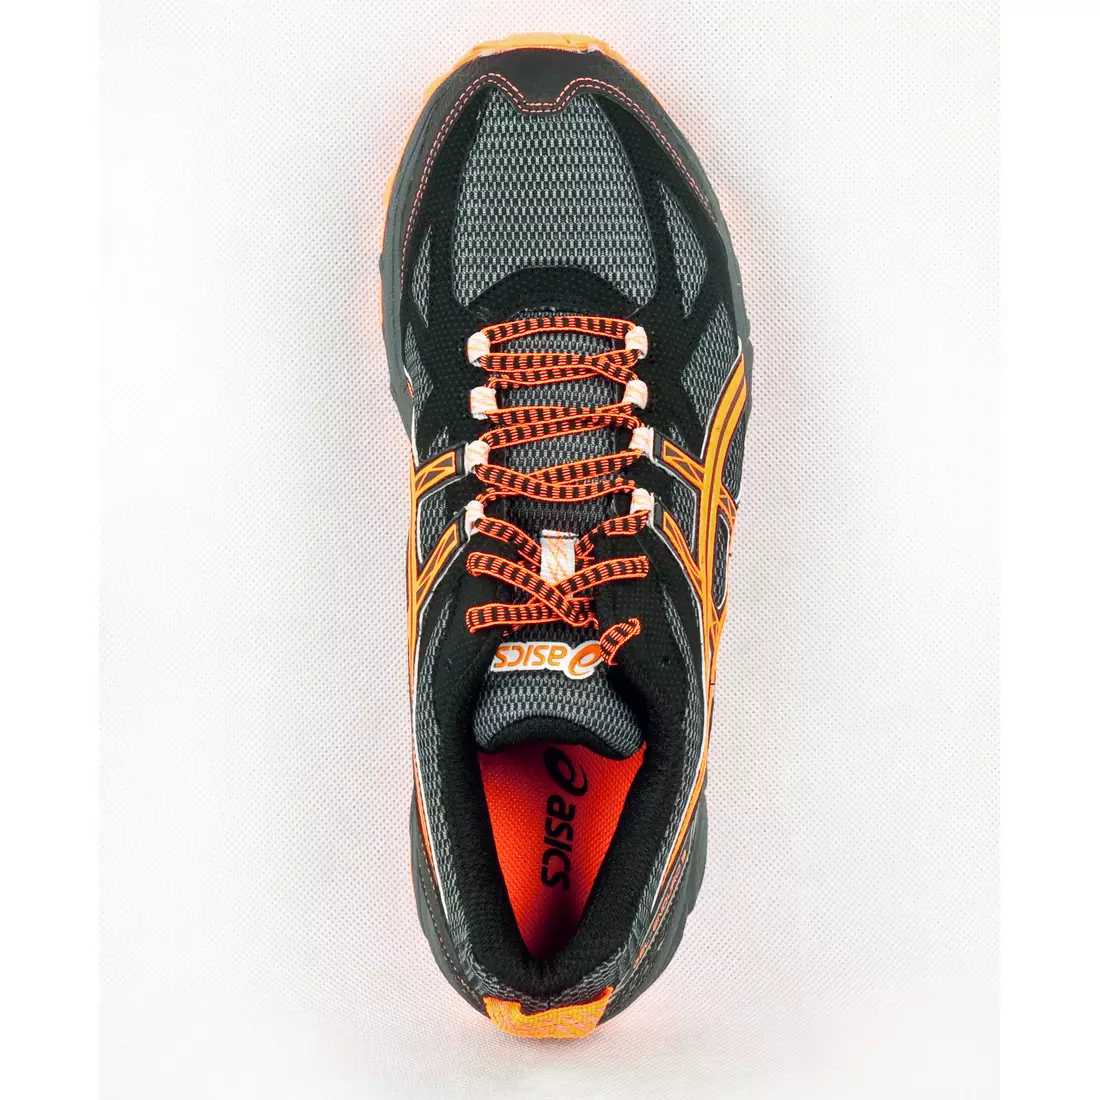 ASICS GEL ENDURO 9 - running shoes 7932, color: Black and orange